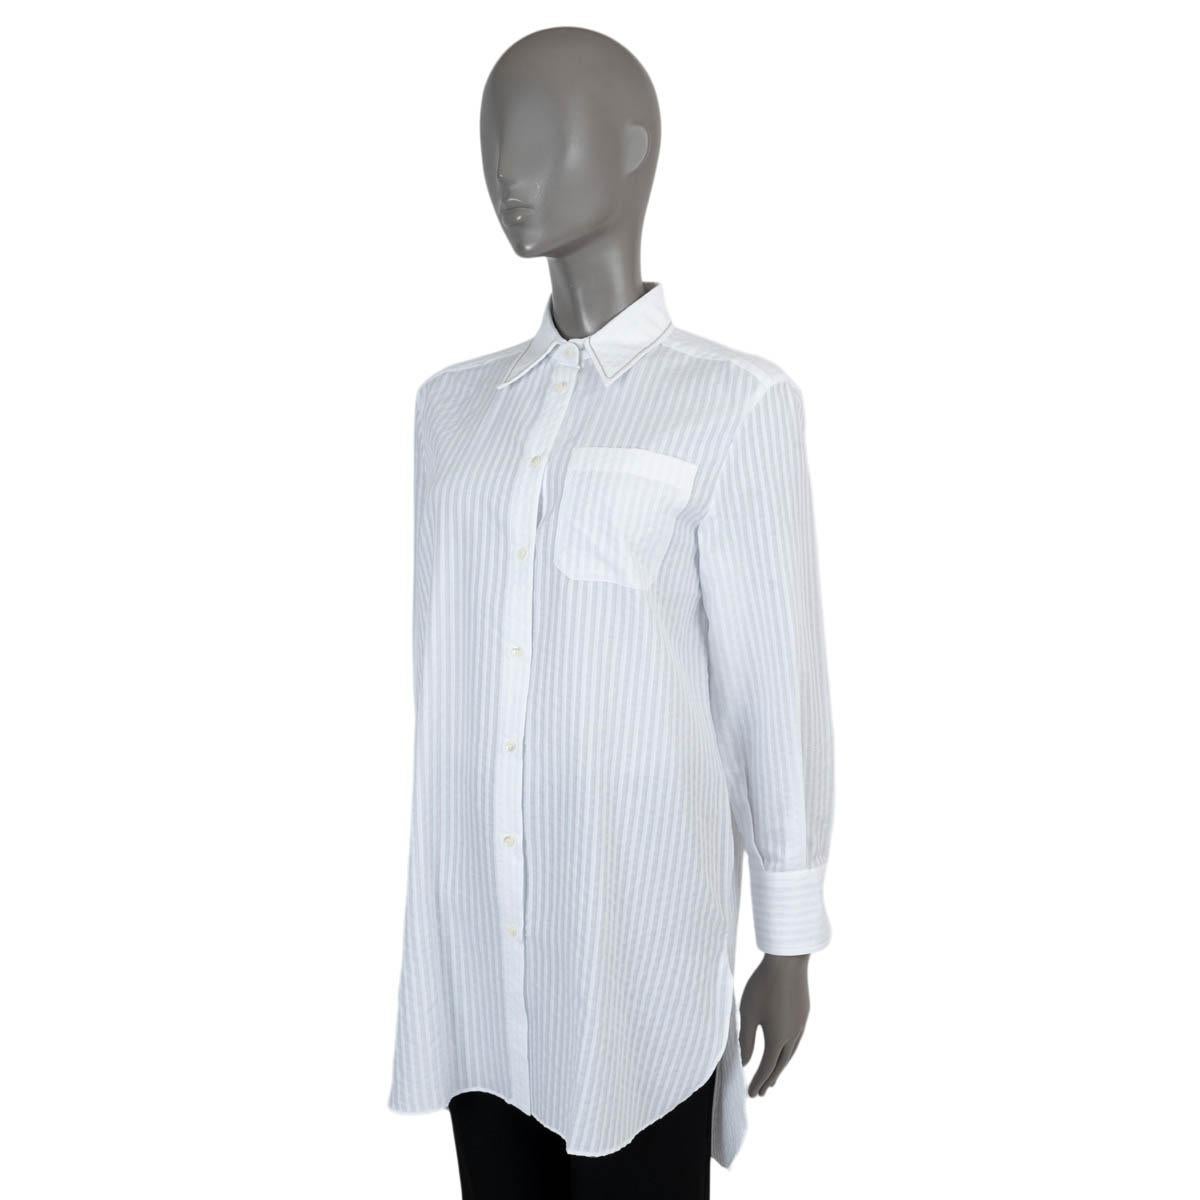 100% authentique Brunello Cucinelli chemise tunique boutonnée en jacquard rayé en coton blanc (100%). Il est orné d'une bordure en monili le long du col et d'une poche ouverte sur la poitrine. Se ferme par des boutons sur le devant. A été porté et